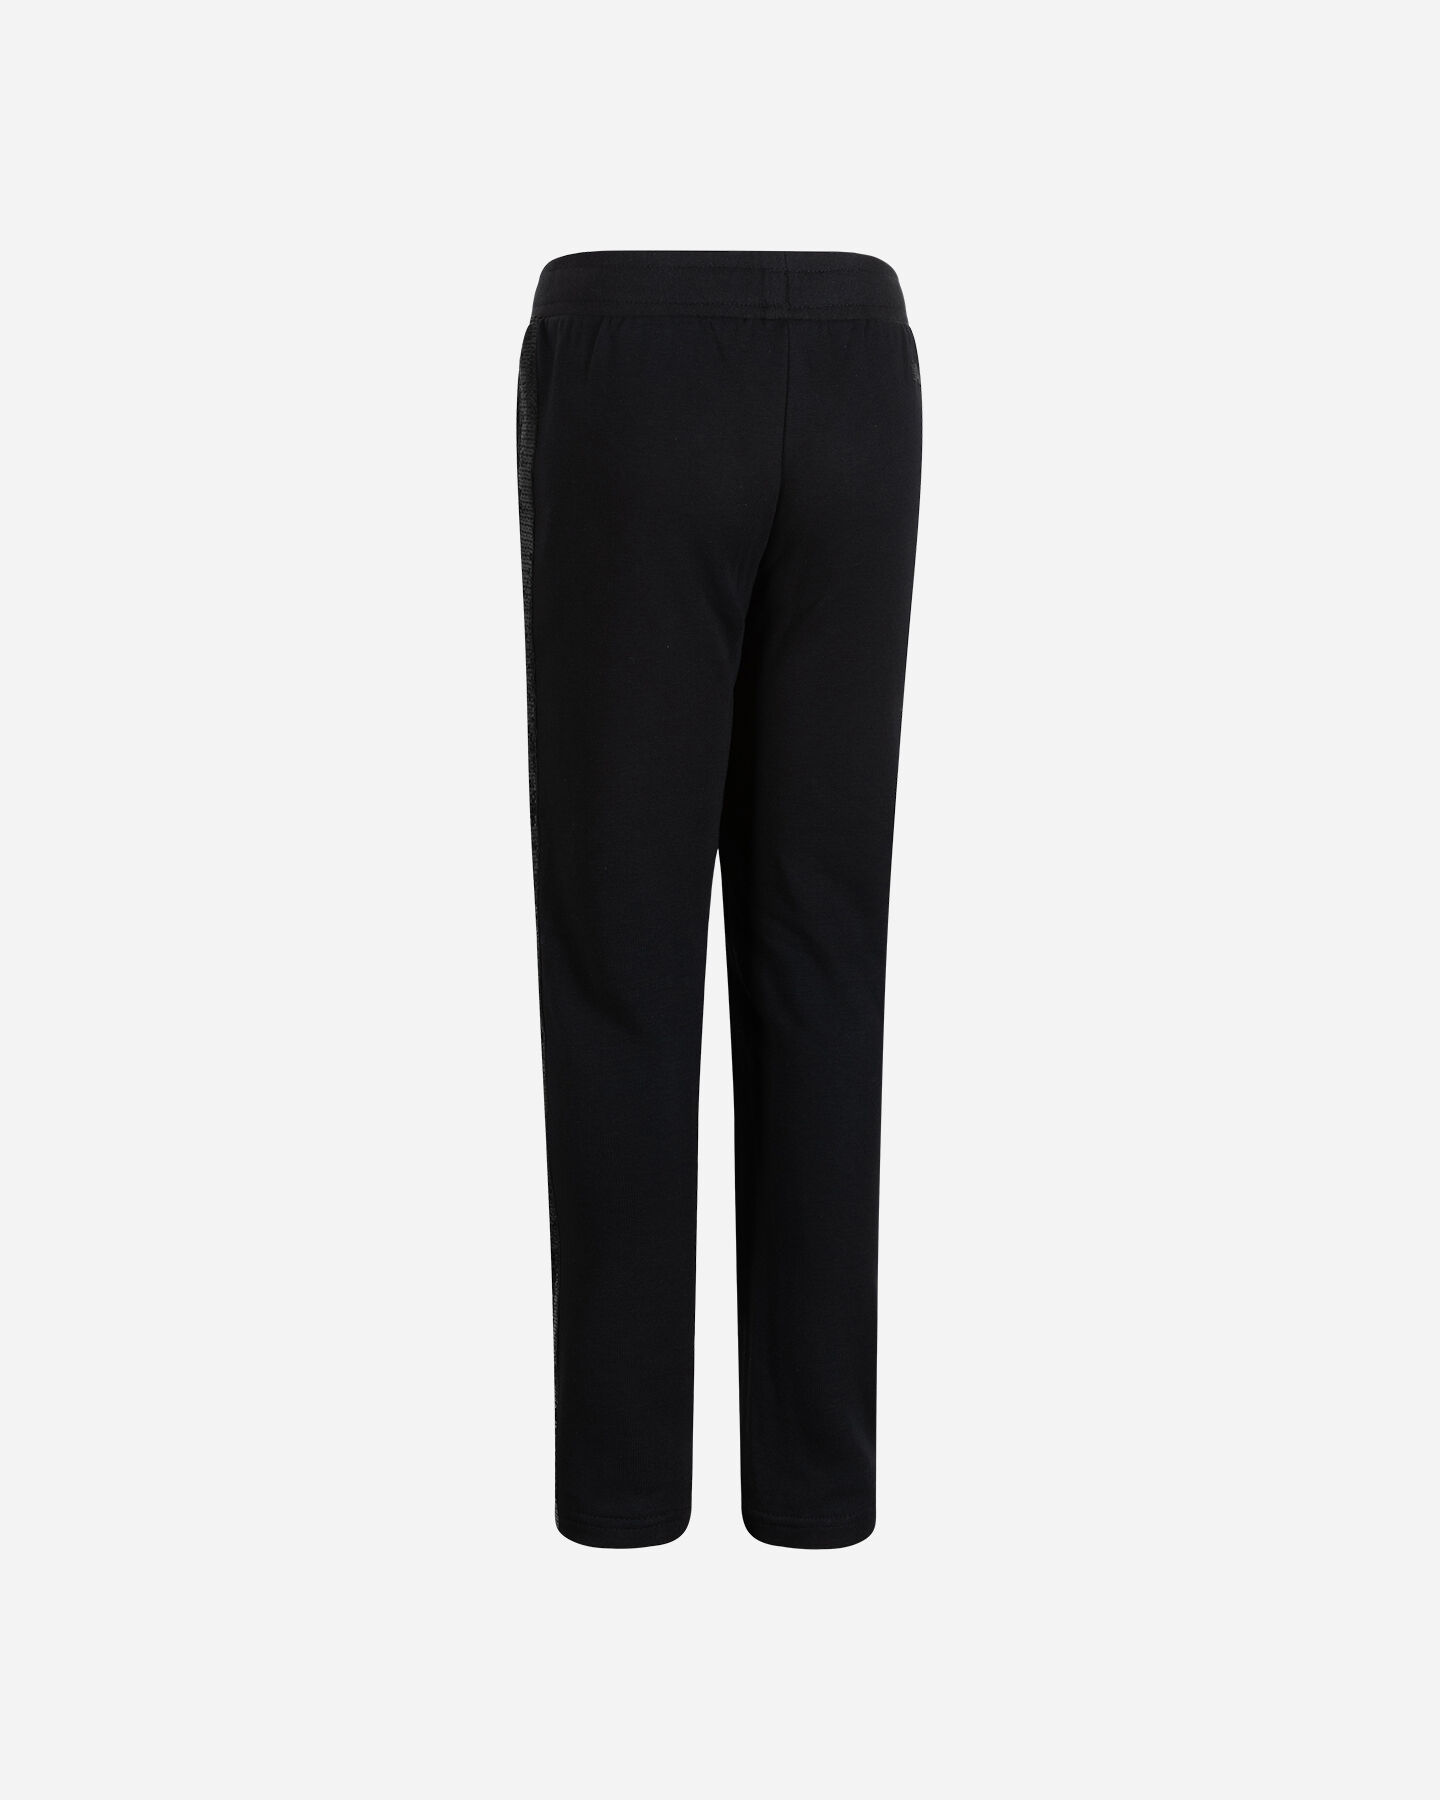  Pantalone ADMIRAL GRAPHIC LOGO JR S4106621|050|12A scatto 1